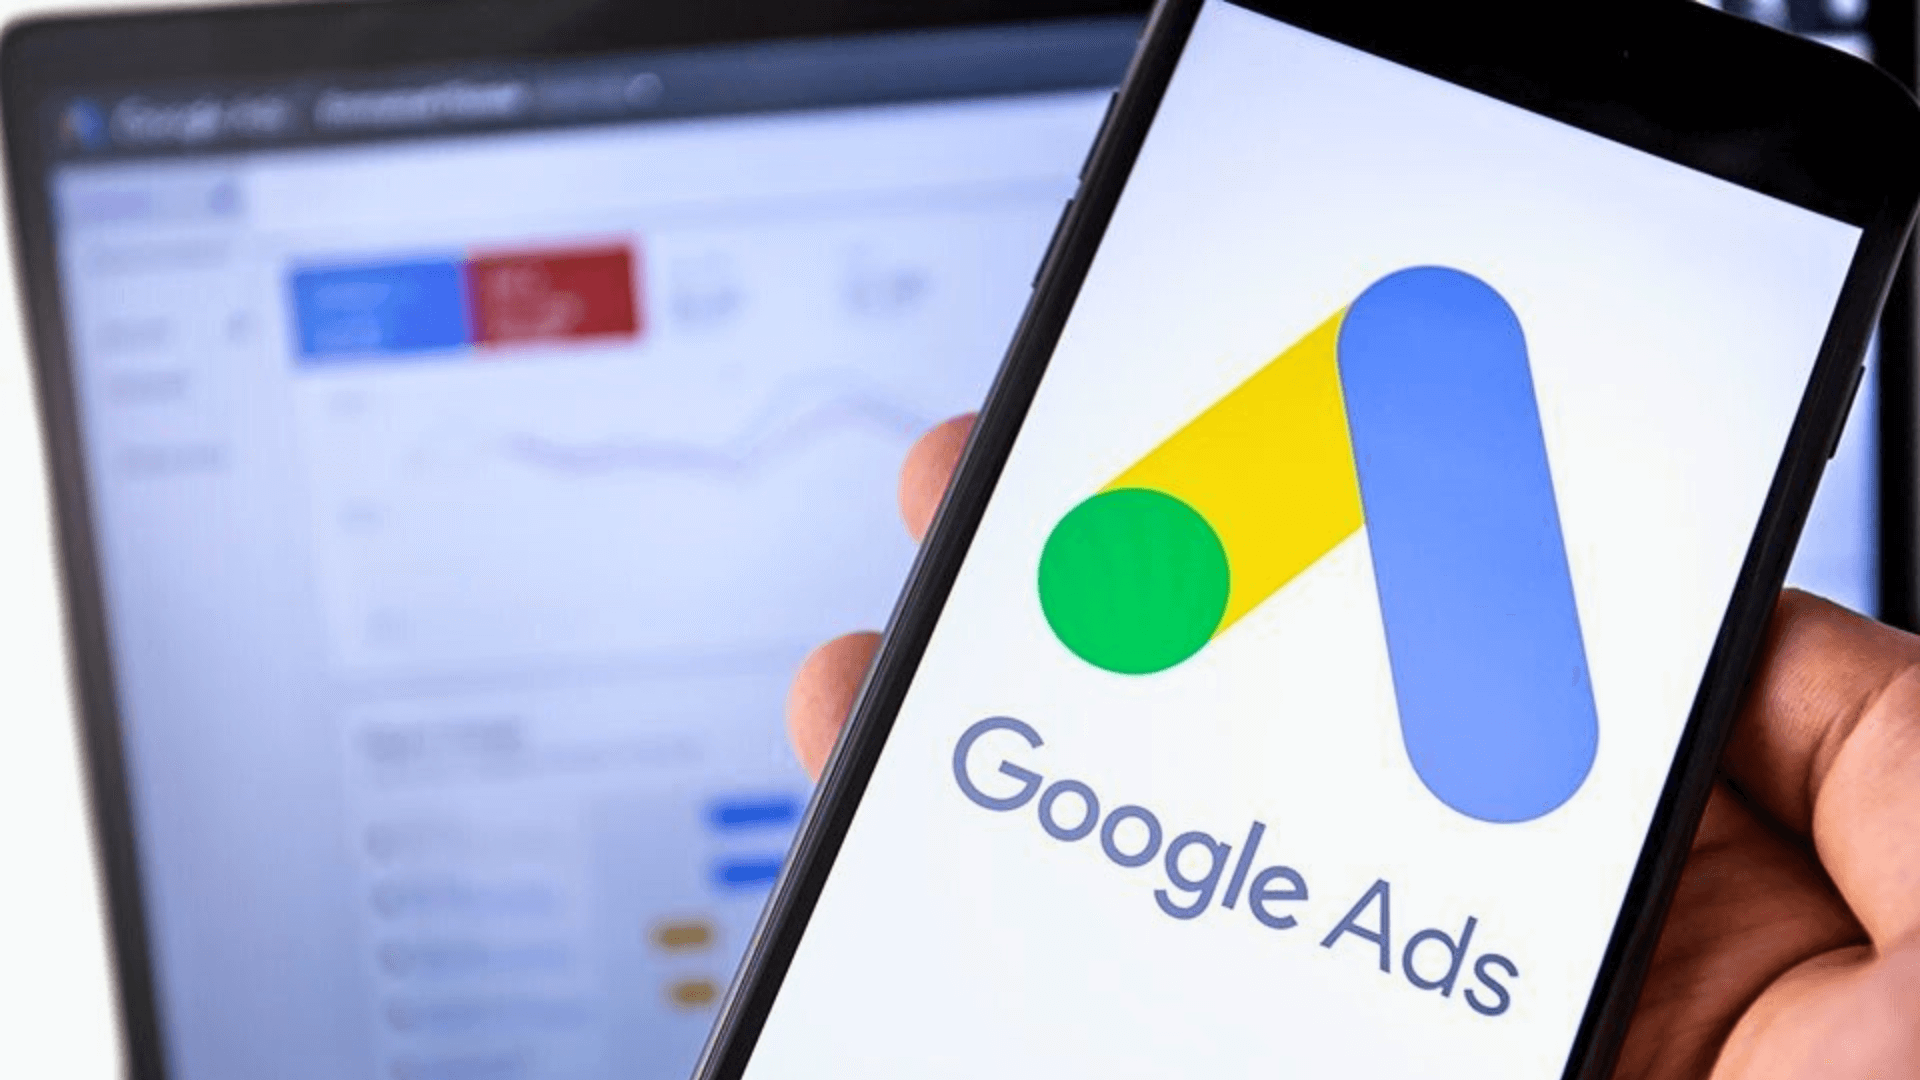 Google Ads adota pagamentos via Pix para oferecer agilidade e segurança aos anunciantes